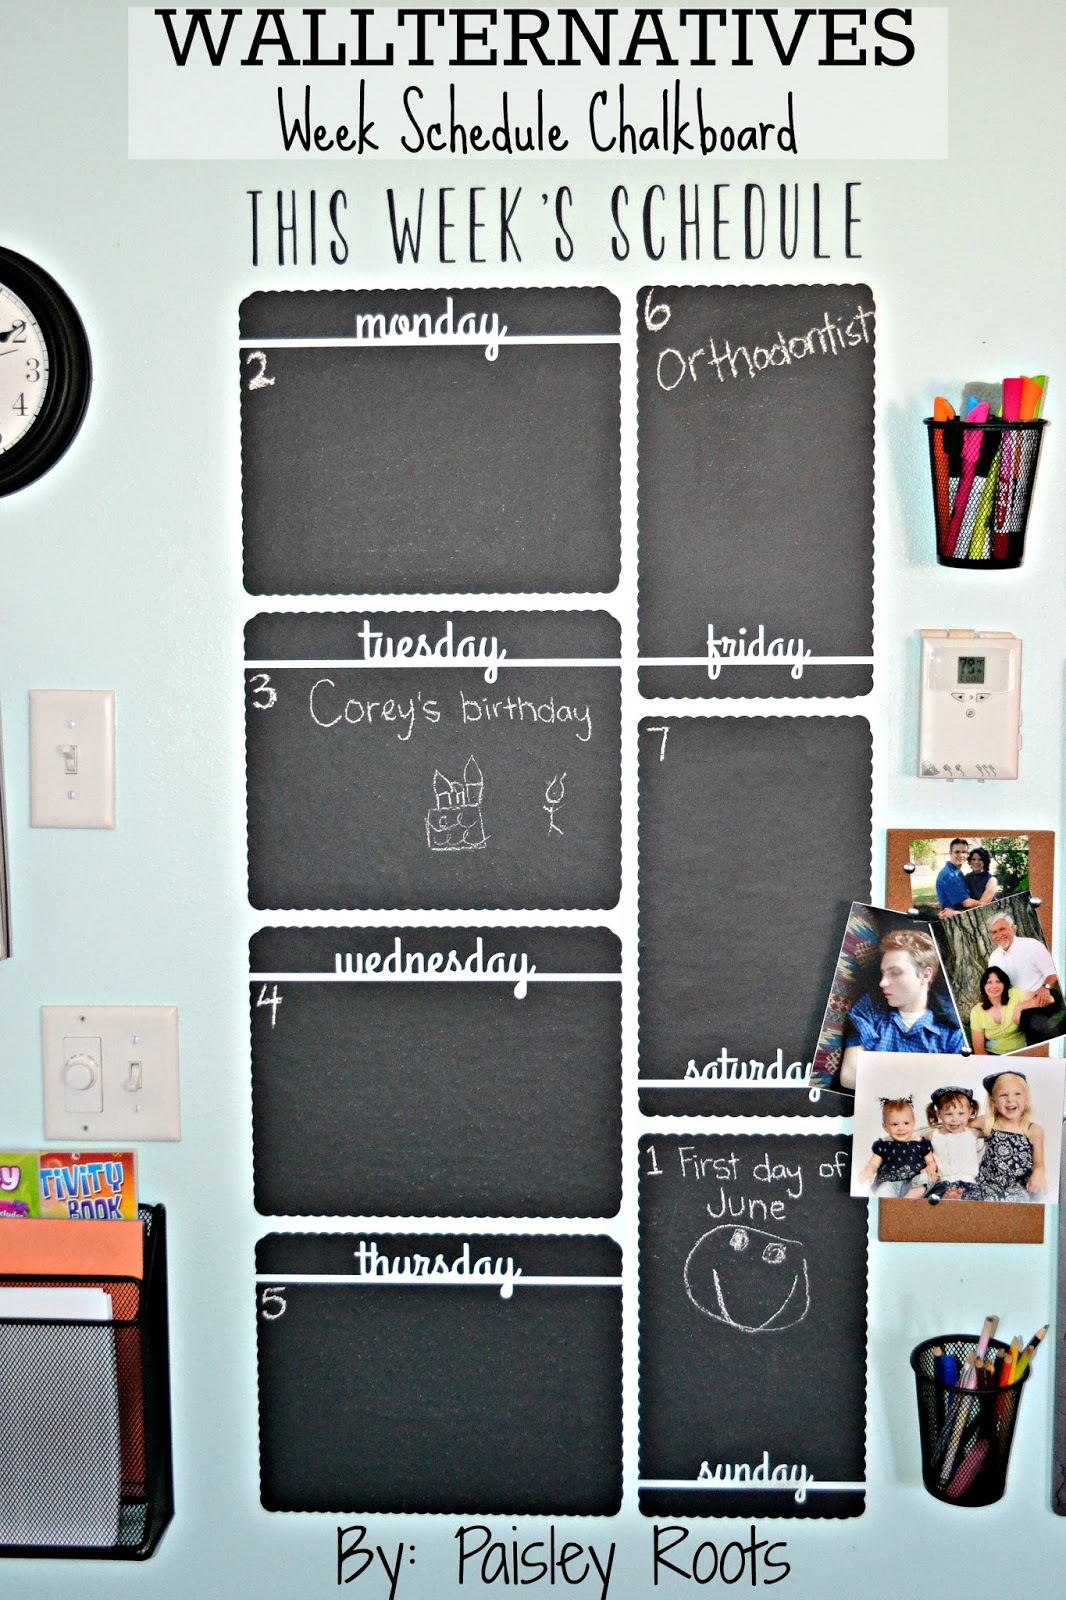 Paisley Roots: Wallternatives - Week Schedule Chalkboard